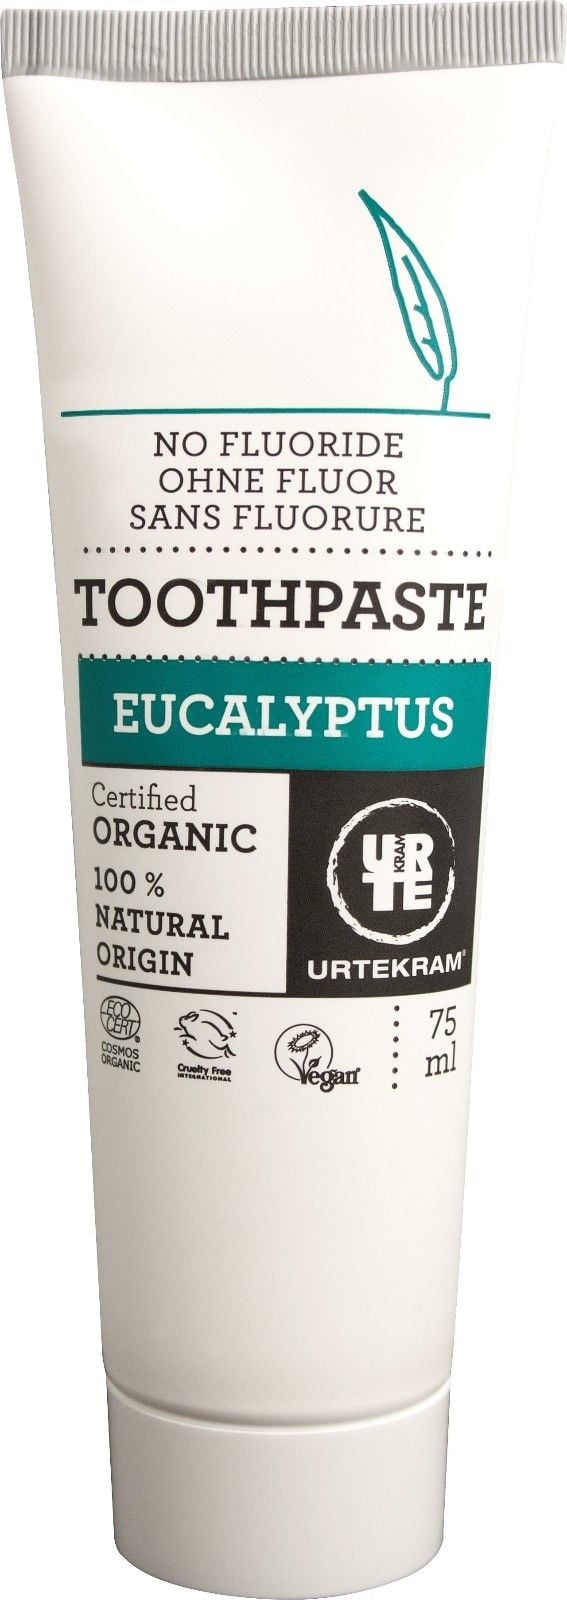 Органическая зубная паста Urtekram с эвкалиптом, 75 мл - фото 1